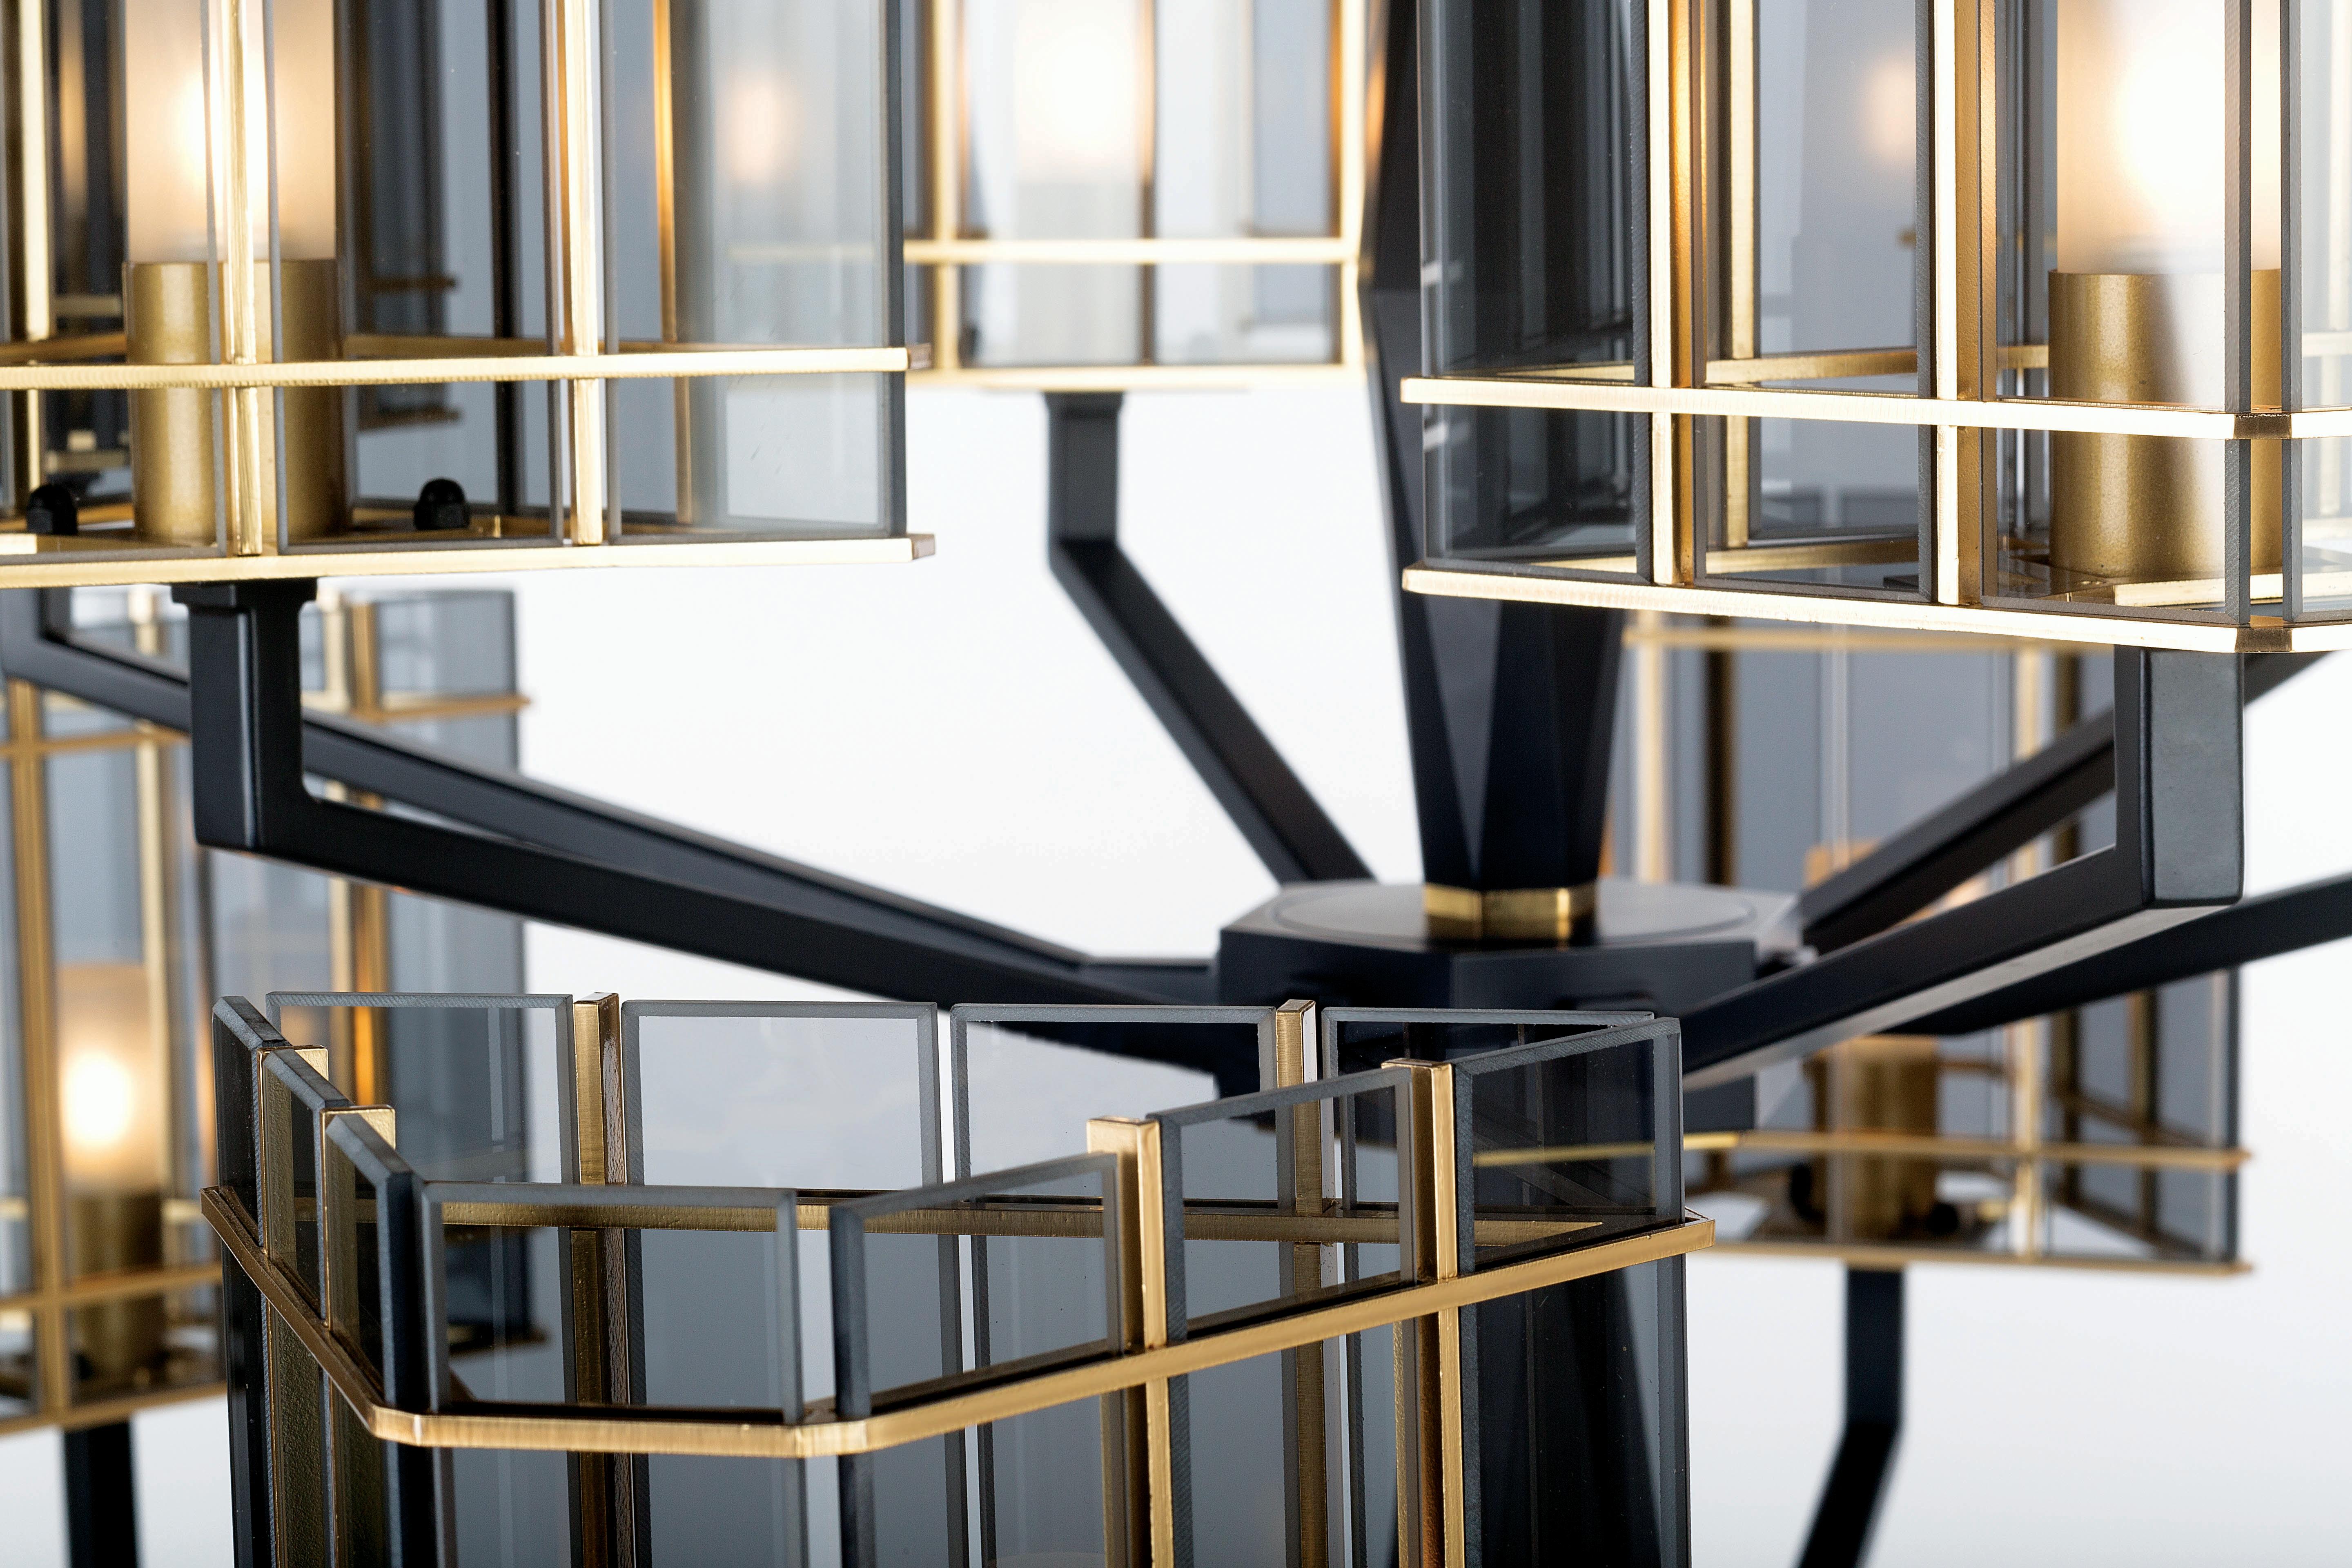 Top Glass Kollektion, eine raffinierte Linie, bei der die mattschwarze Oberfläche Geometrien auf der massiven, facettierten Struktur bildet und die Schirme aus Glaselementen in goldenen Käfigen bestehen. 

Schirme aus transparentem Glas in der